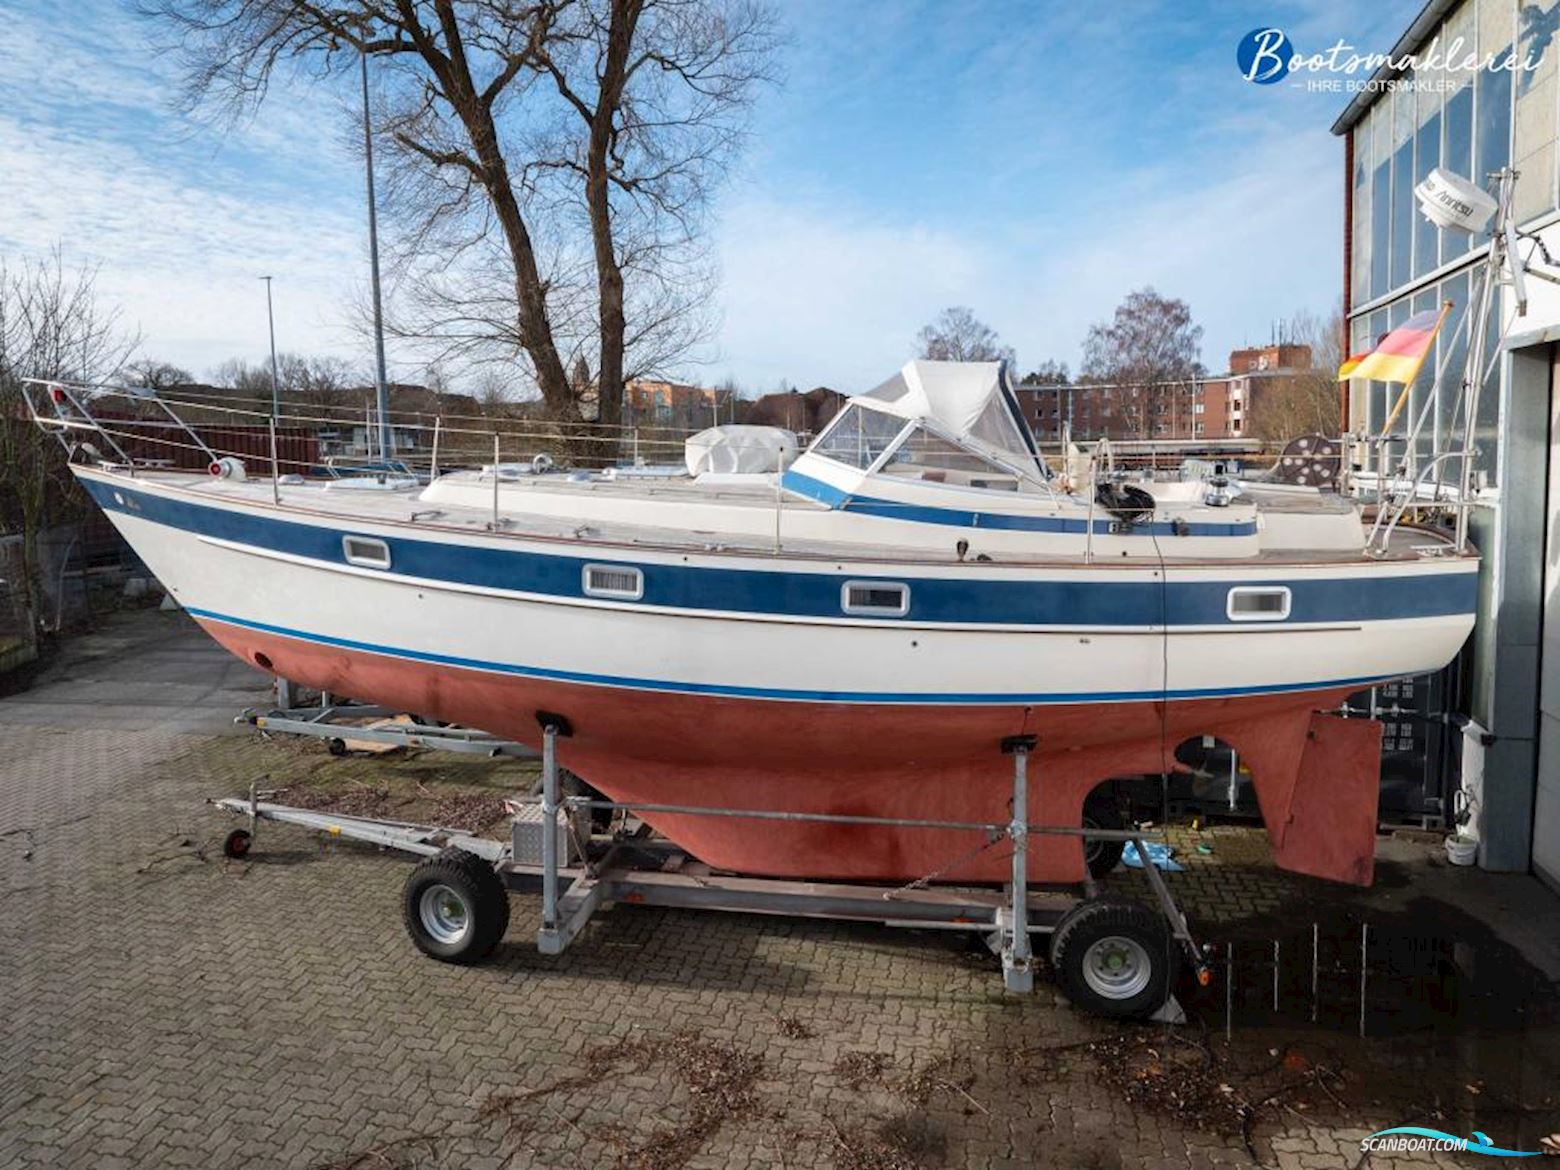 Hallberg-Rassy 352 Segelbåt 1980, med Volvo Penta motor, Tyskland